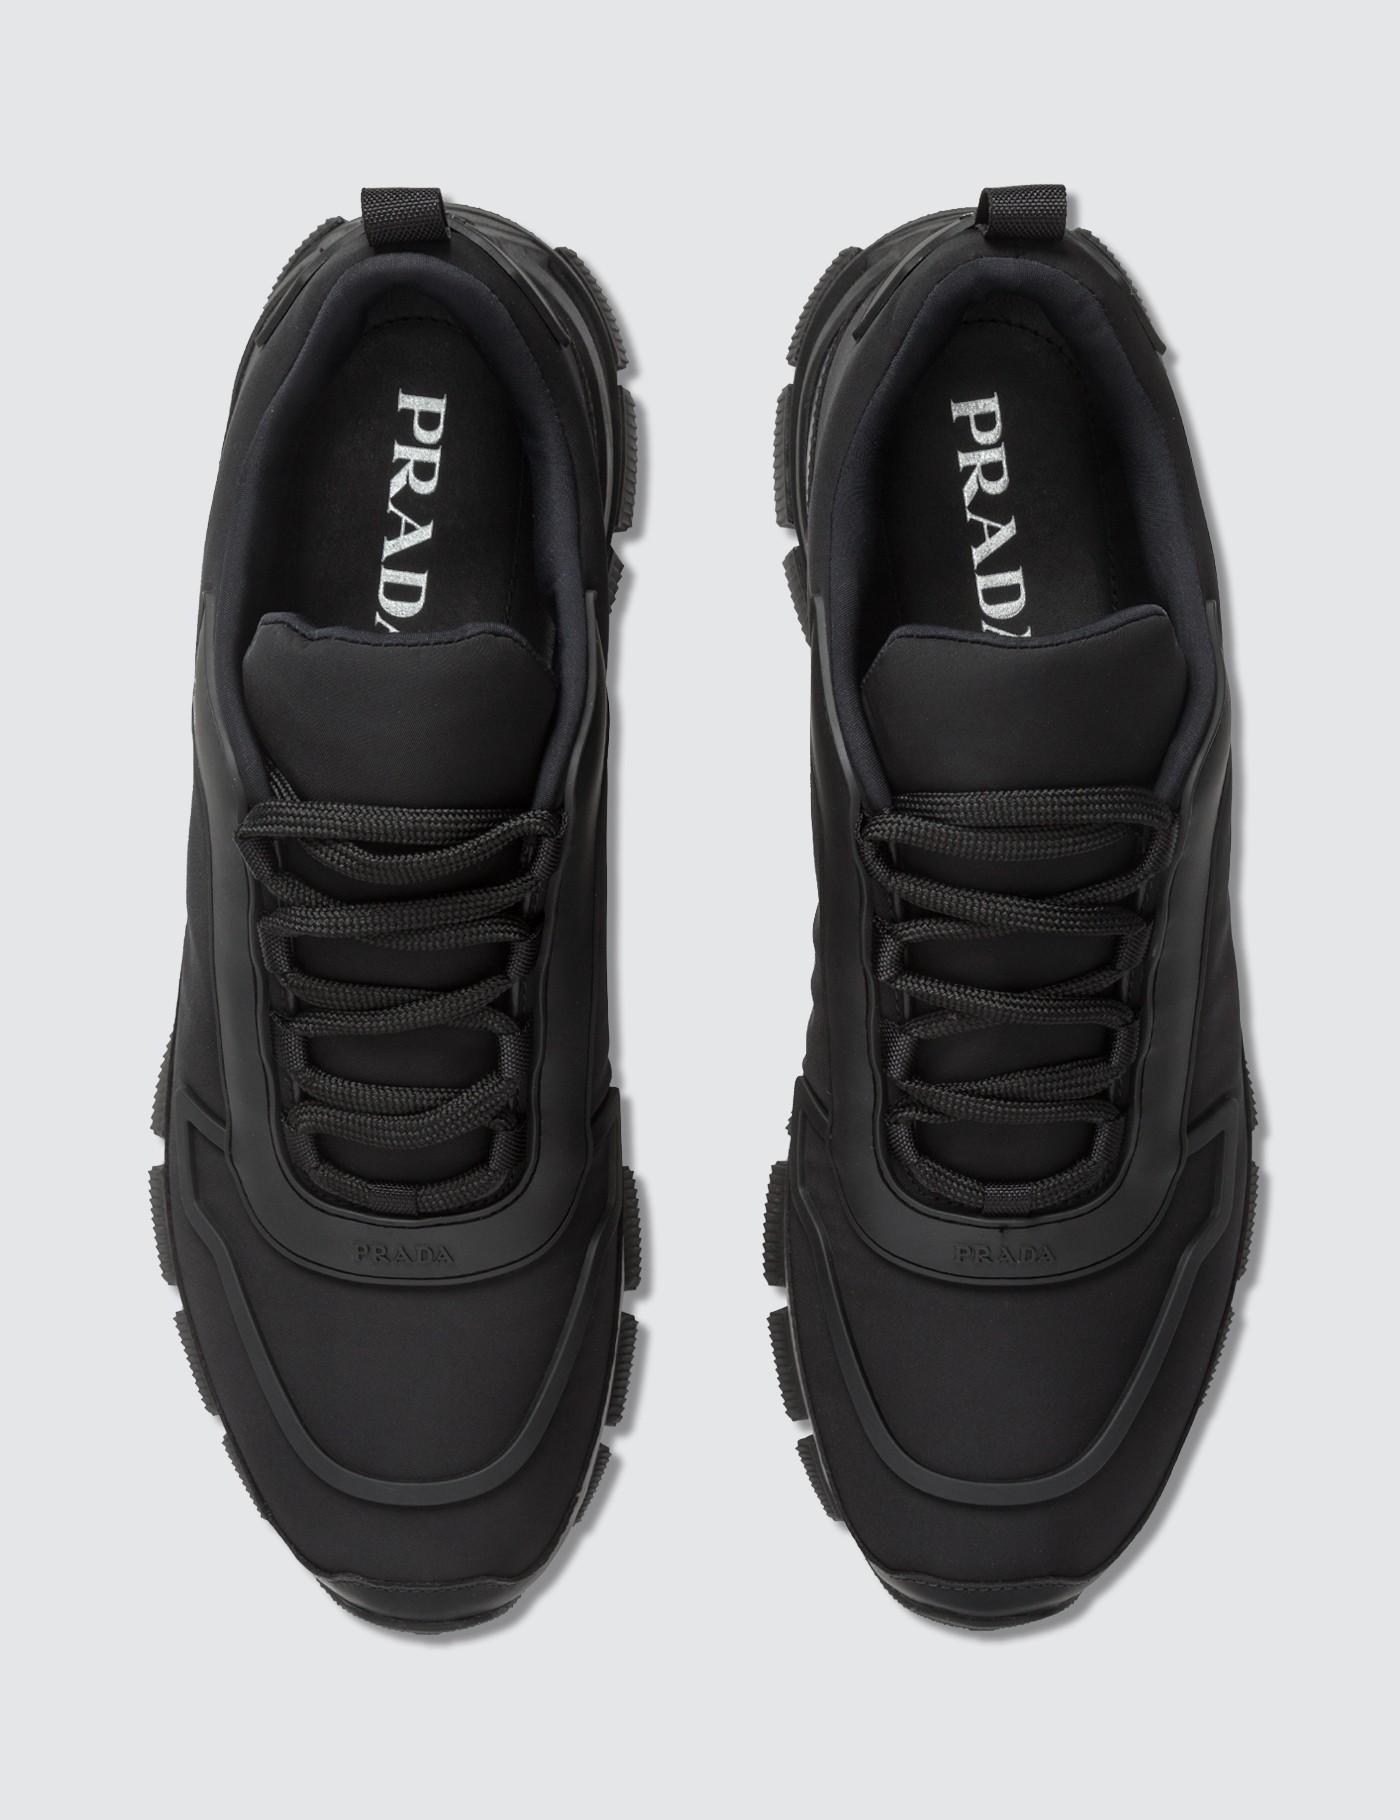 Prada Synthetic Gabardine Soft Sneaker in Black for Men - Lyst